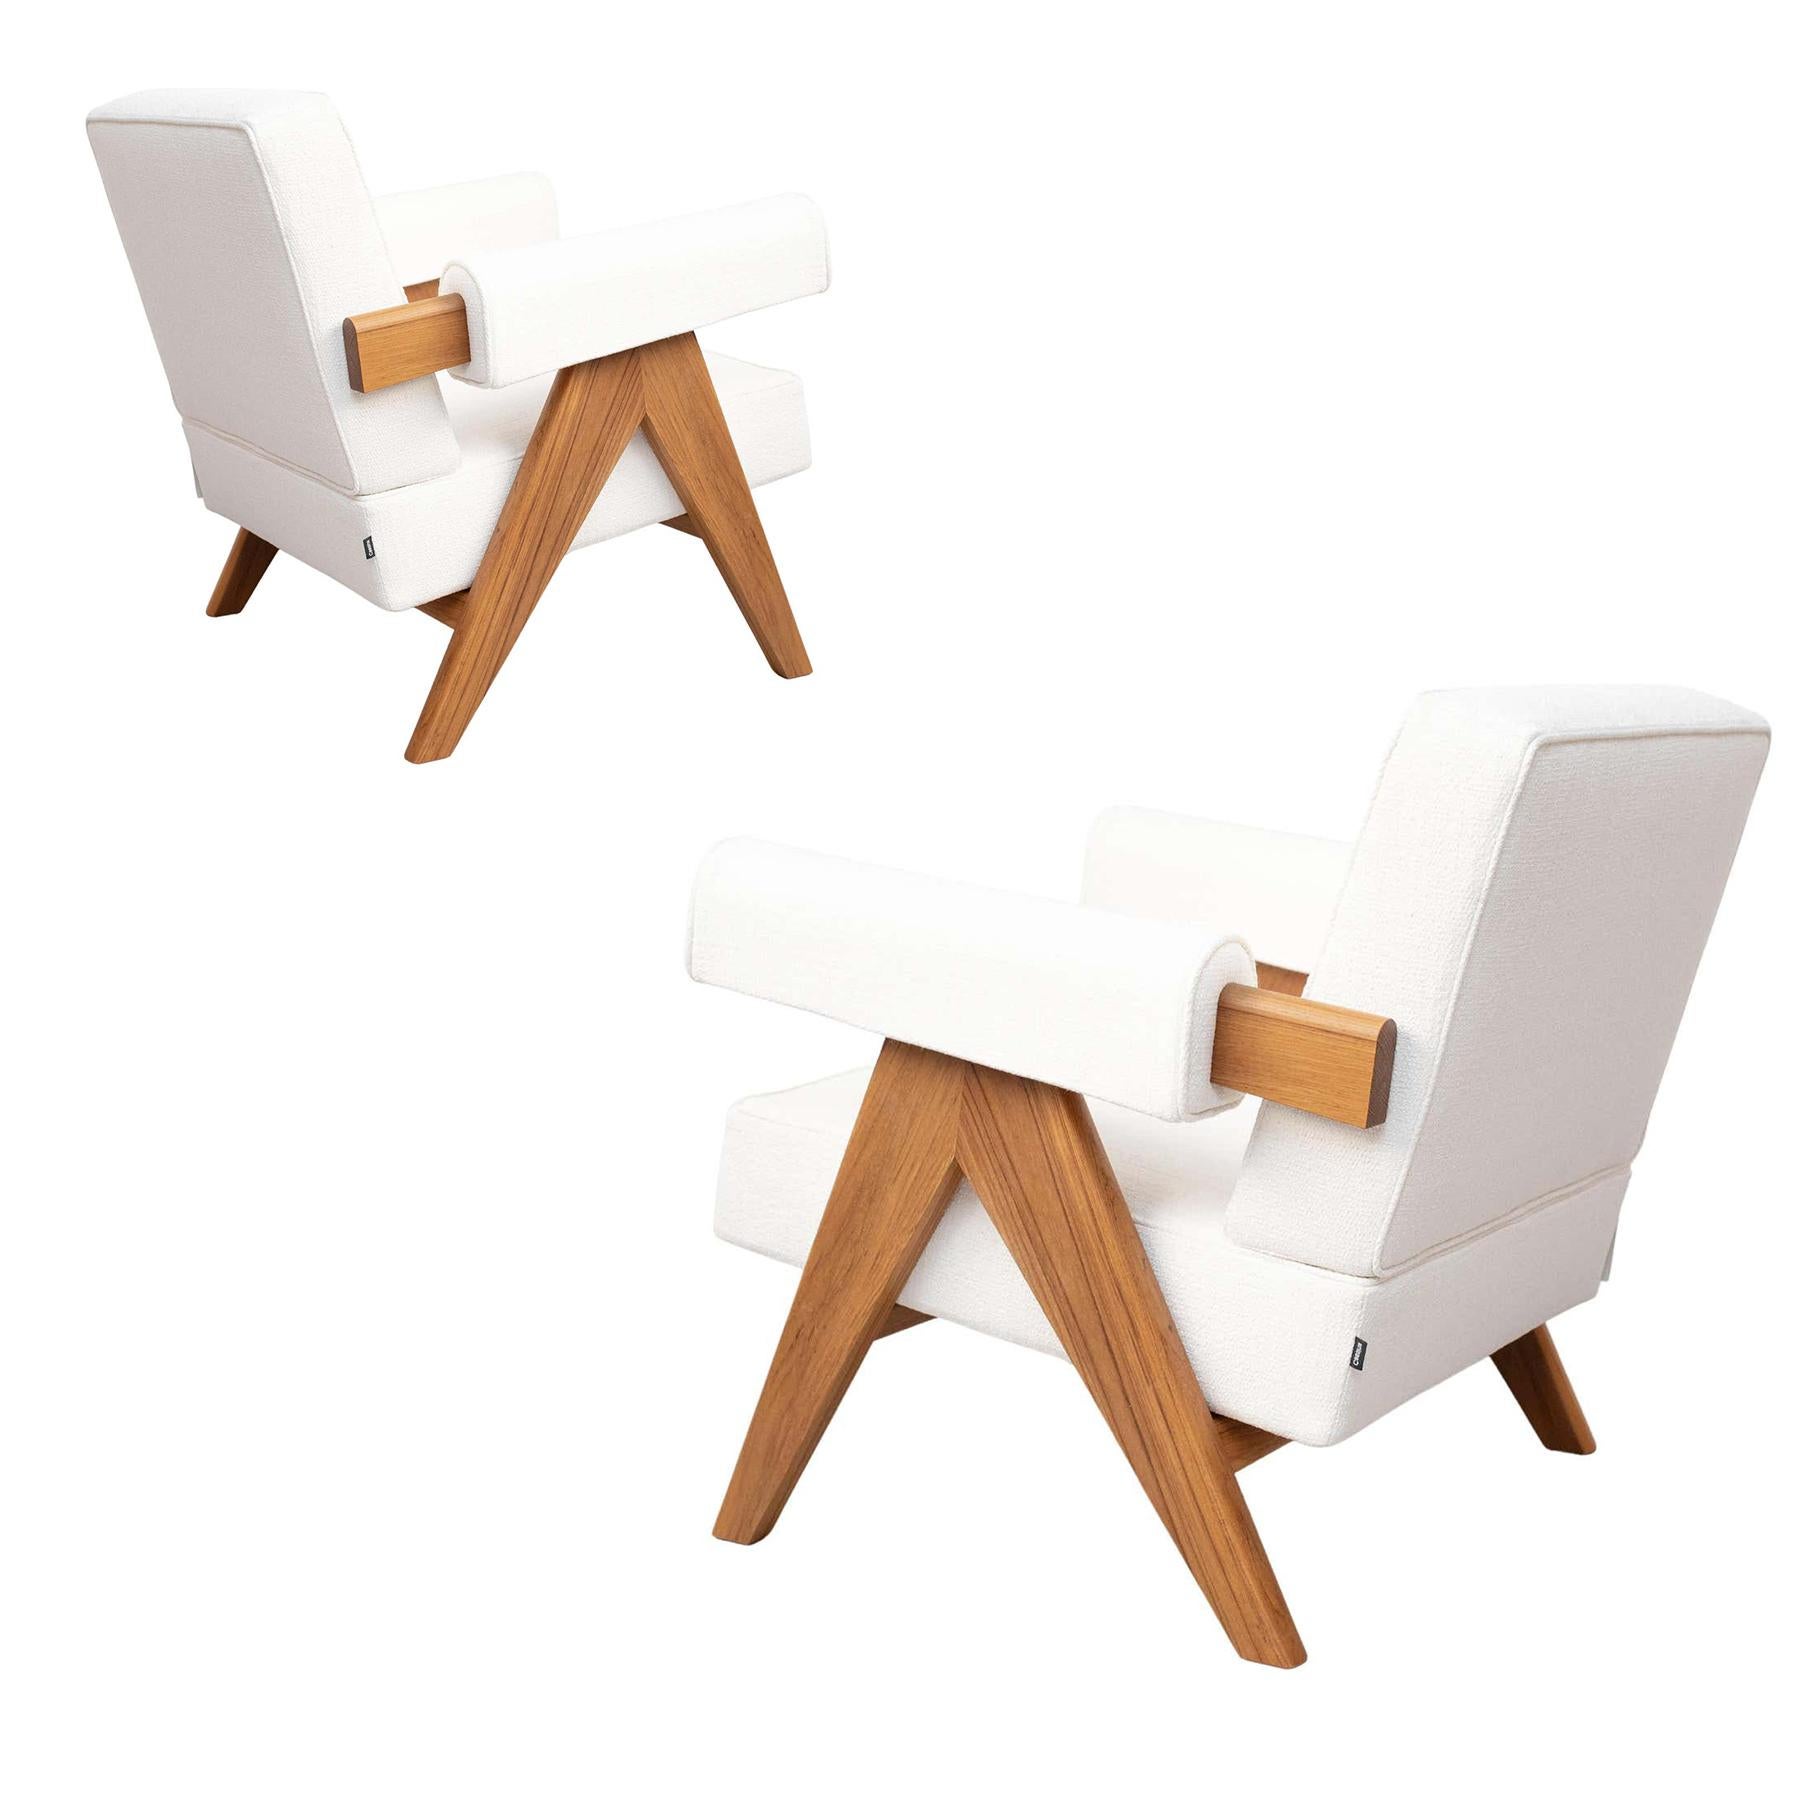 Set aus zwei Sesseln, entworfen von Pierre Jeanneret um 1950, neu aufgelegt im Jahr 2019.
Hergestellt von Cassina in Italien.

Die außergewöhnliche Architektur des 1951 von Le Corbusier entworfenen Capitol Complex in Chandigarh wurde von der UNESCO